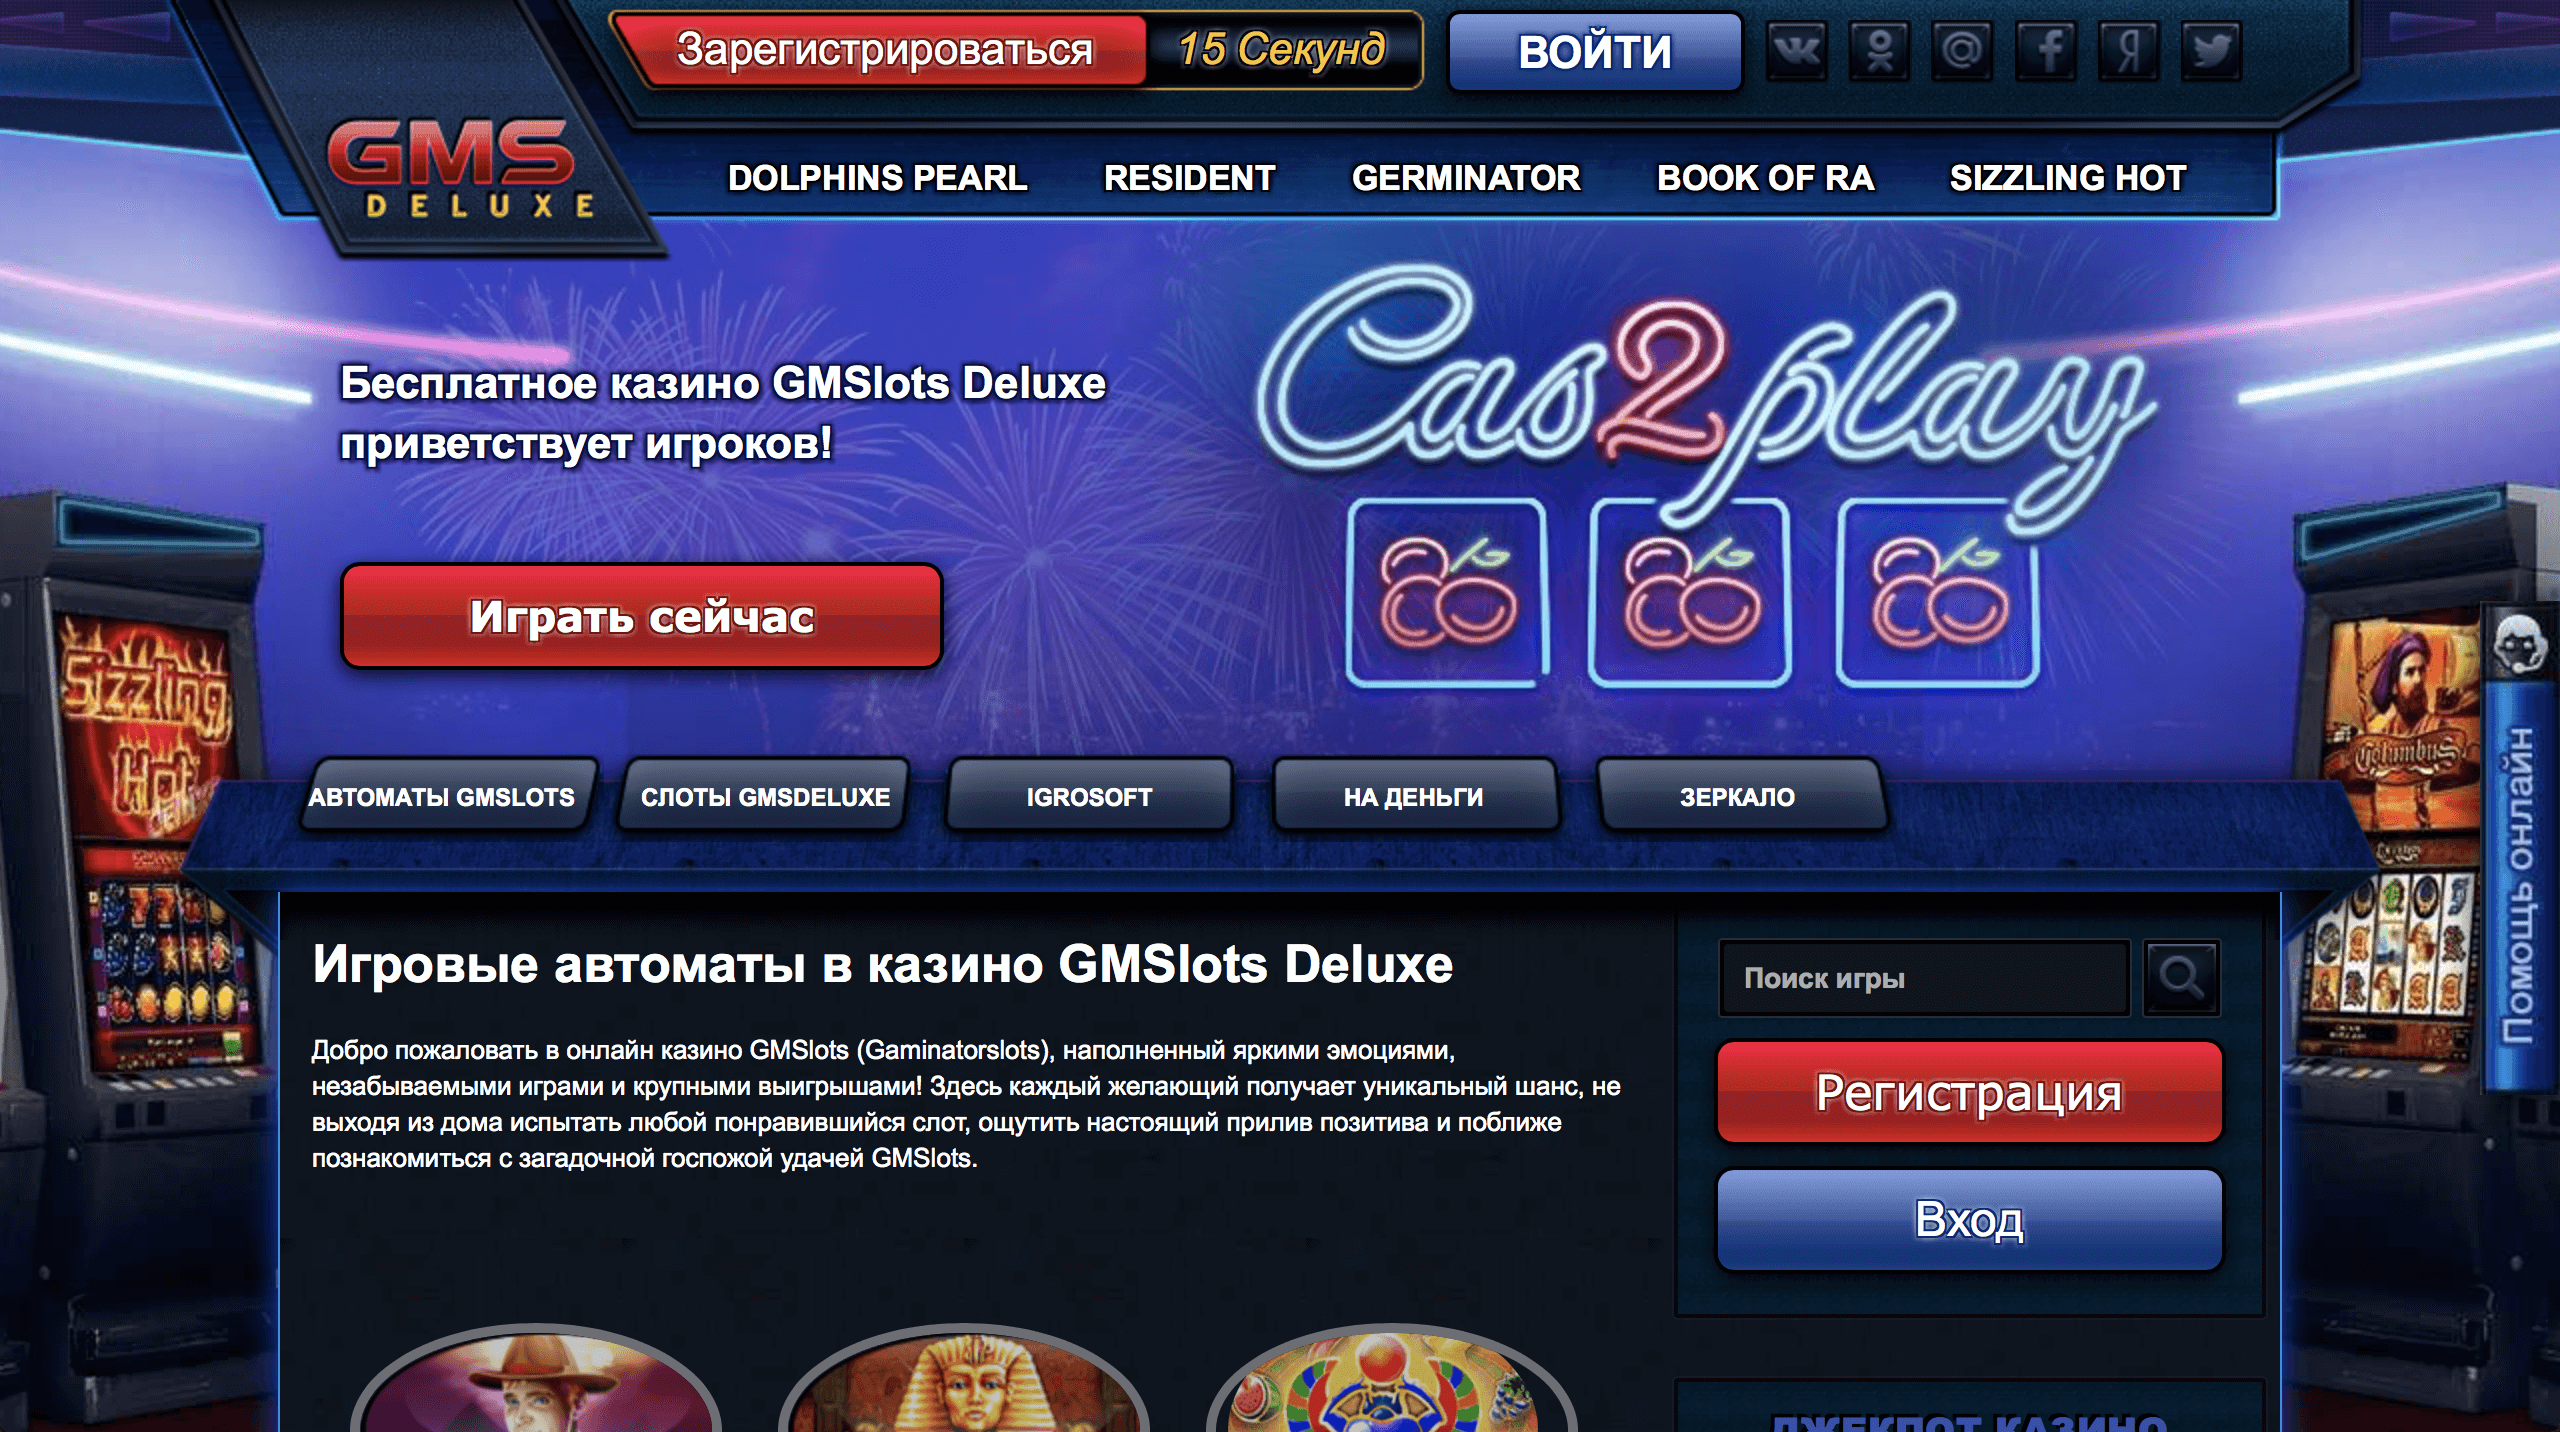 Казино вулкан играть онлайн на официальном сайте 777 original casino отзывы